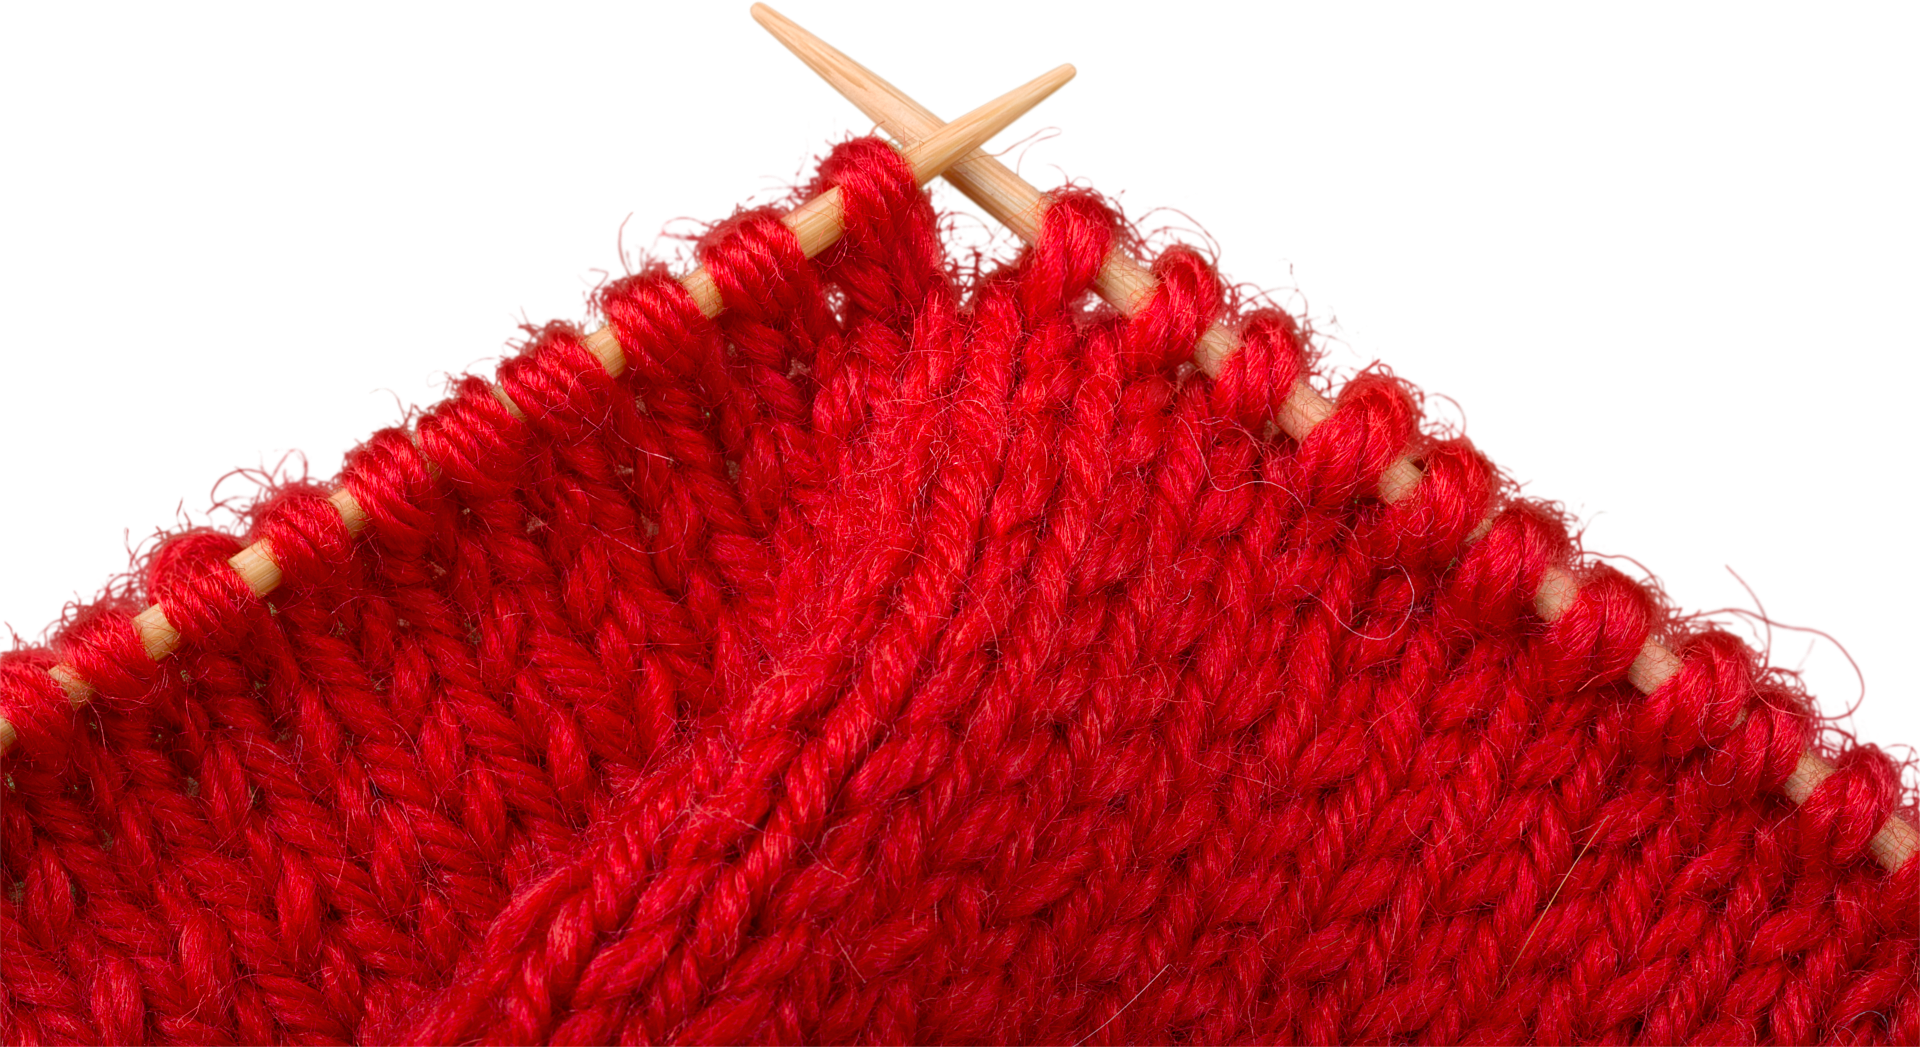 knitting clipart cute